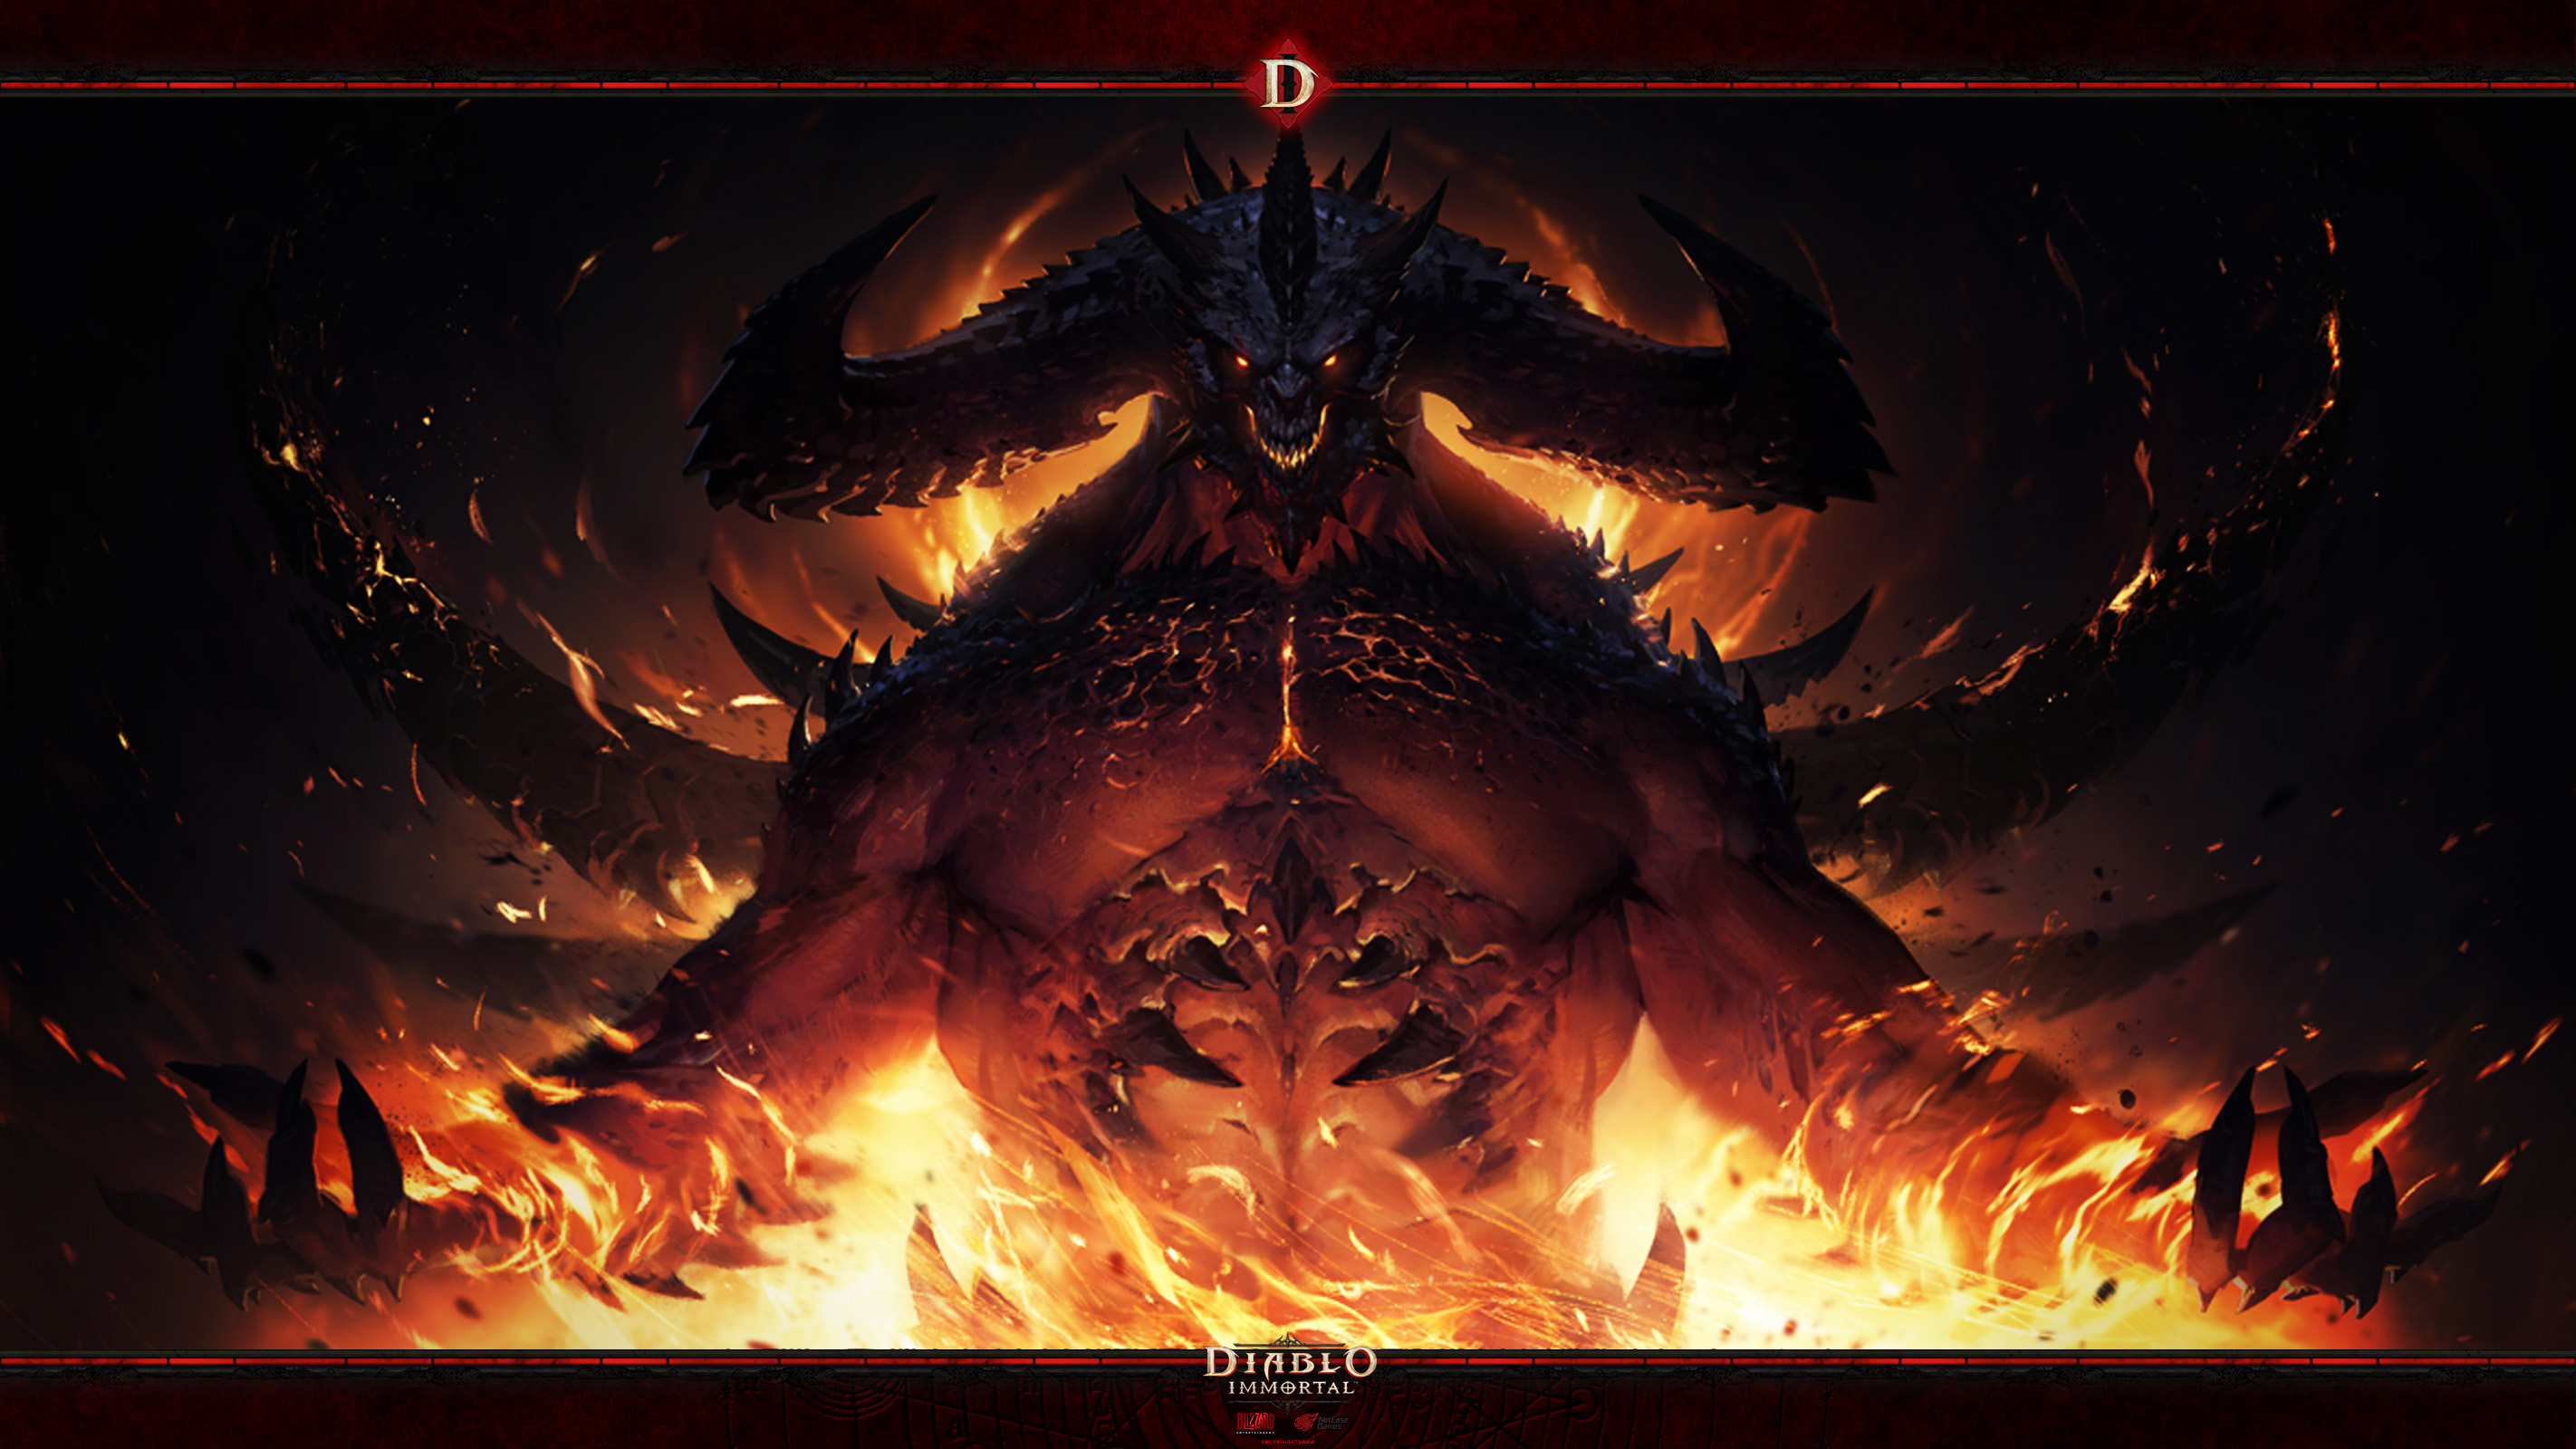 Diablo Immortal #1: Diablo